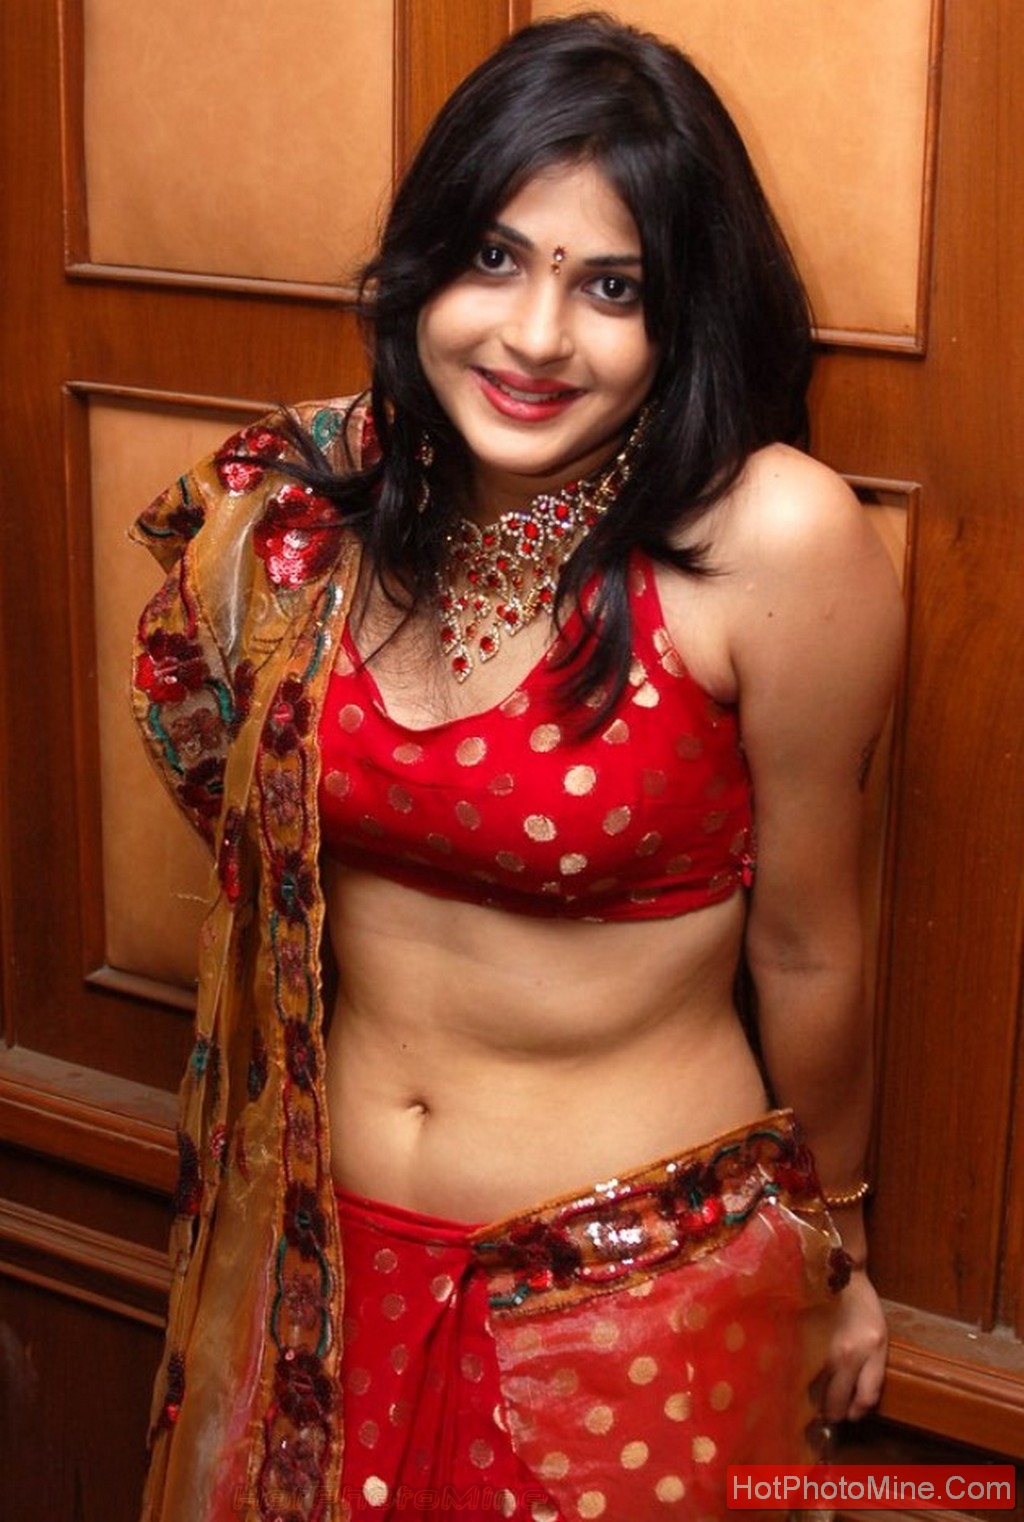 Sahut Hirohin Sex Video - Top South Indian Actress Desi Masala pics Damnn Hot Photos ...